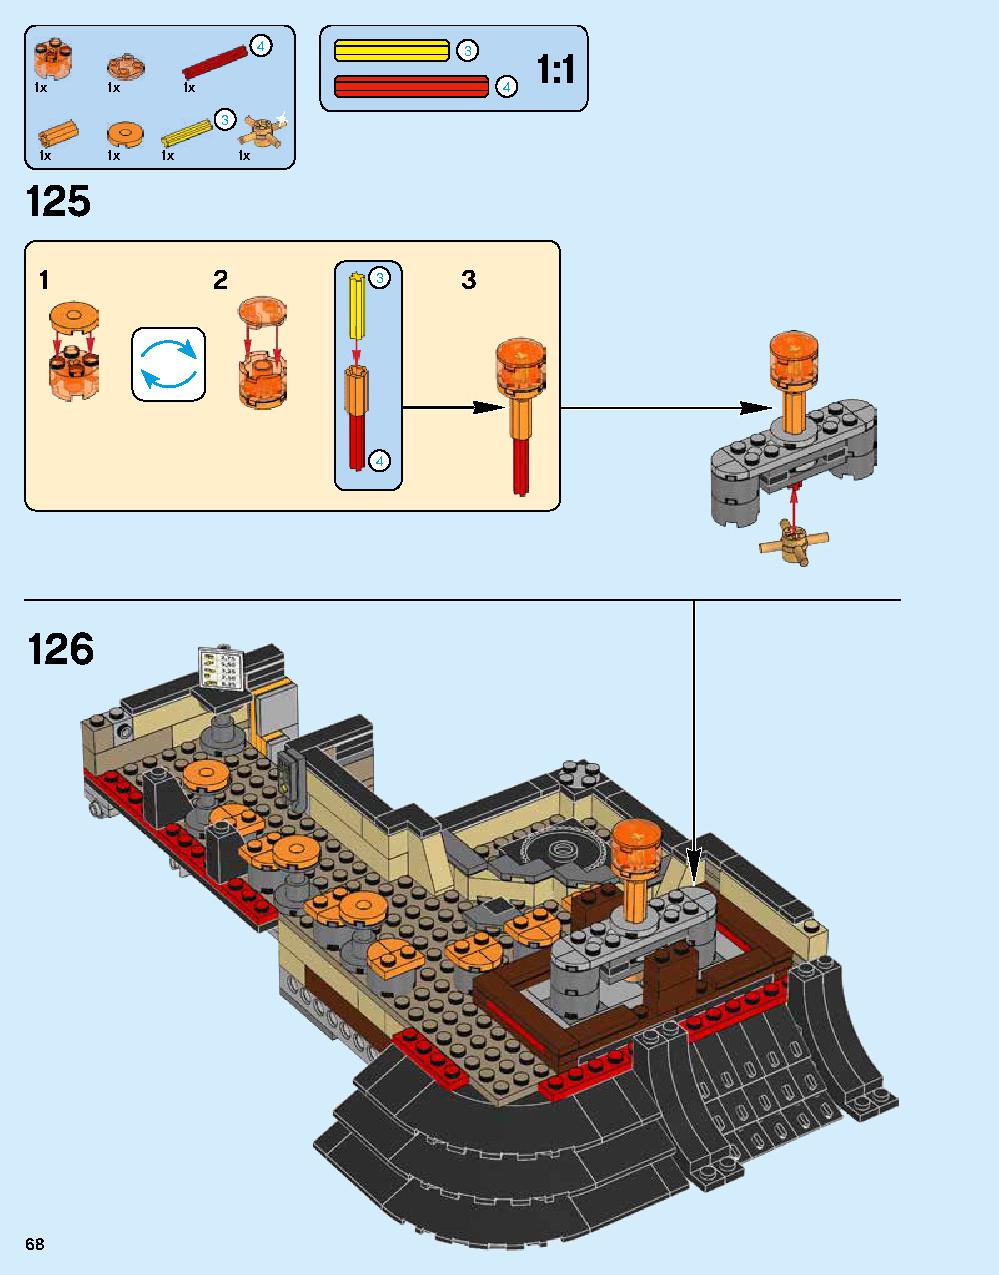 ニンジャゴー シティ 70620 レゴの商品情報 レゴの説明書・組立方法 68 page